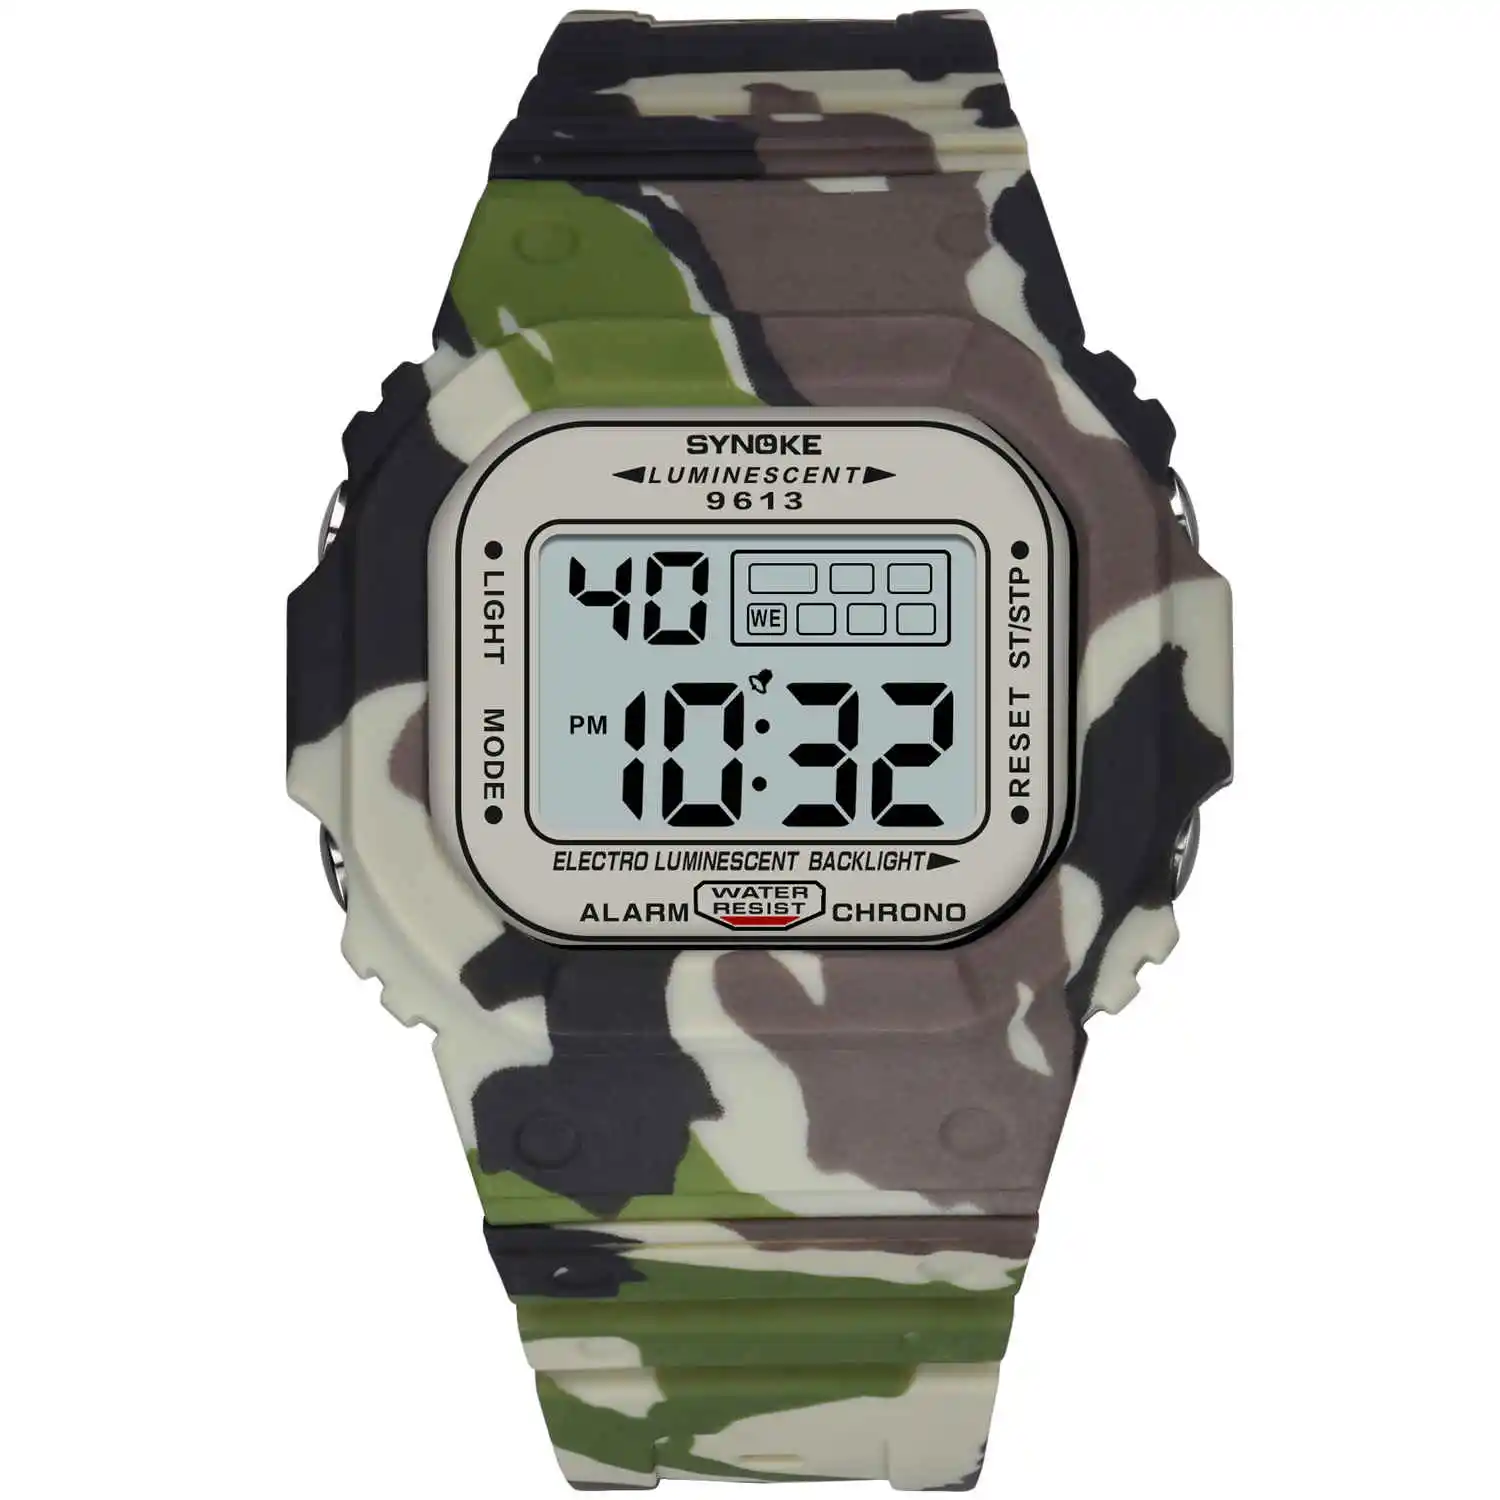 PANARS мужские часы для спорта на открытом воздухе, 3 бар, водонепроницаемые часы с будильником, дисплей недели, военные модные цифровые часы, reloj hombre 9613 - Цвет: Camouflage khaki